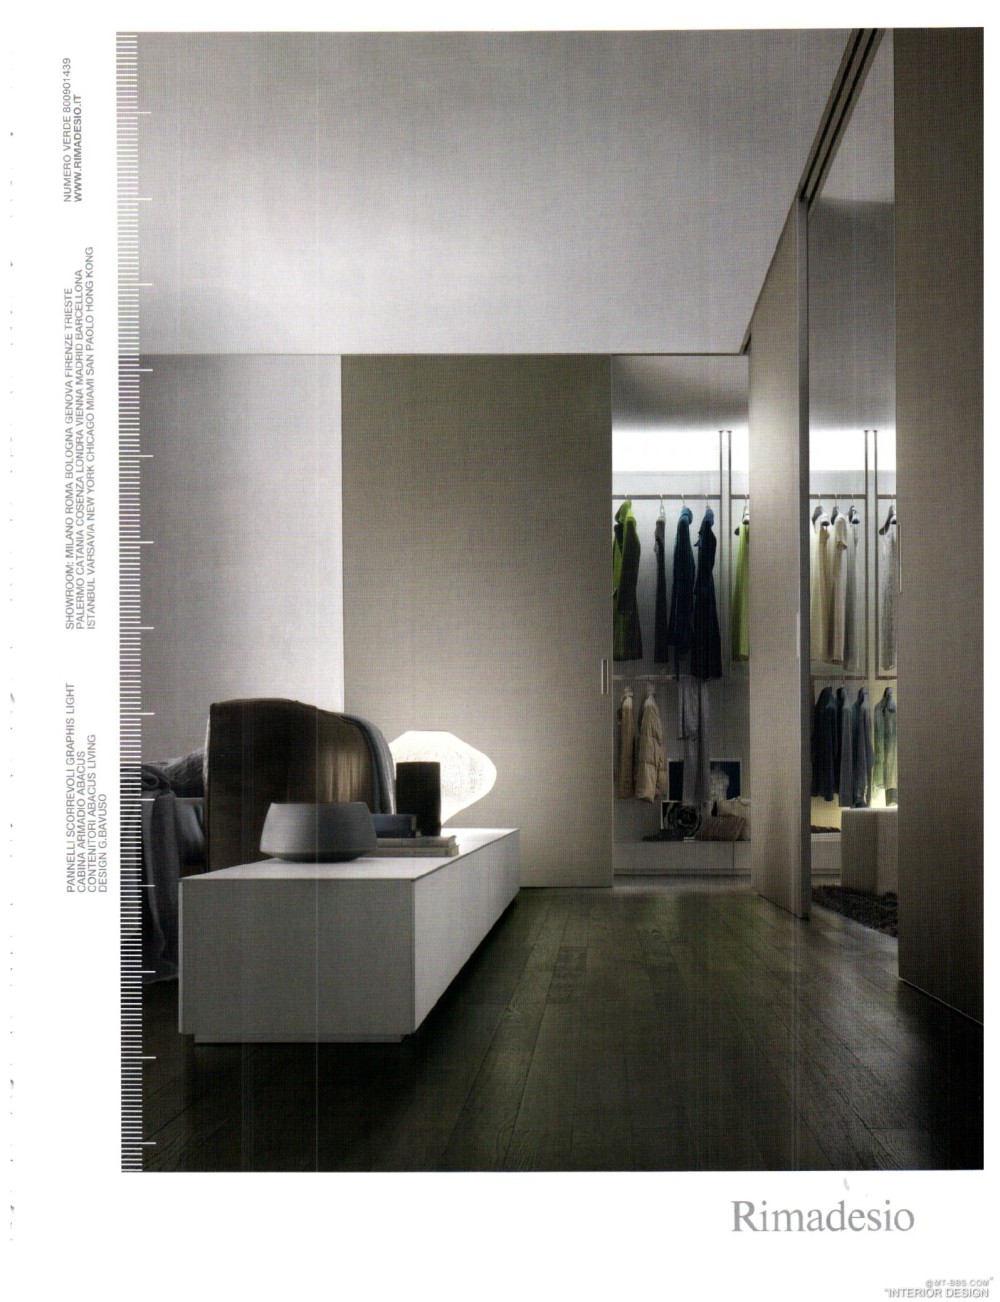 意大利AD 杂志 2012年全年JPG高清版本 全免（上传完毕）_0021.jpg